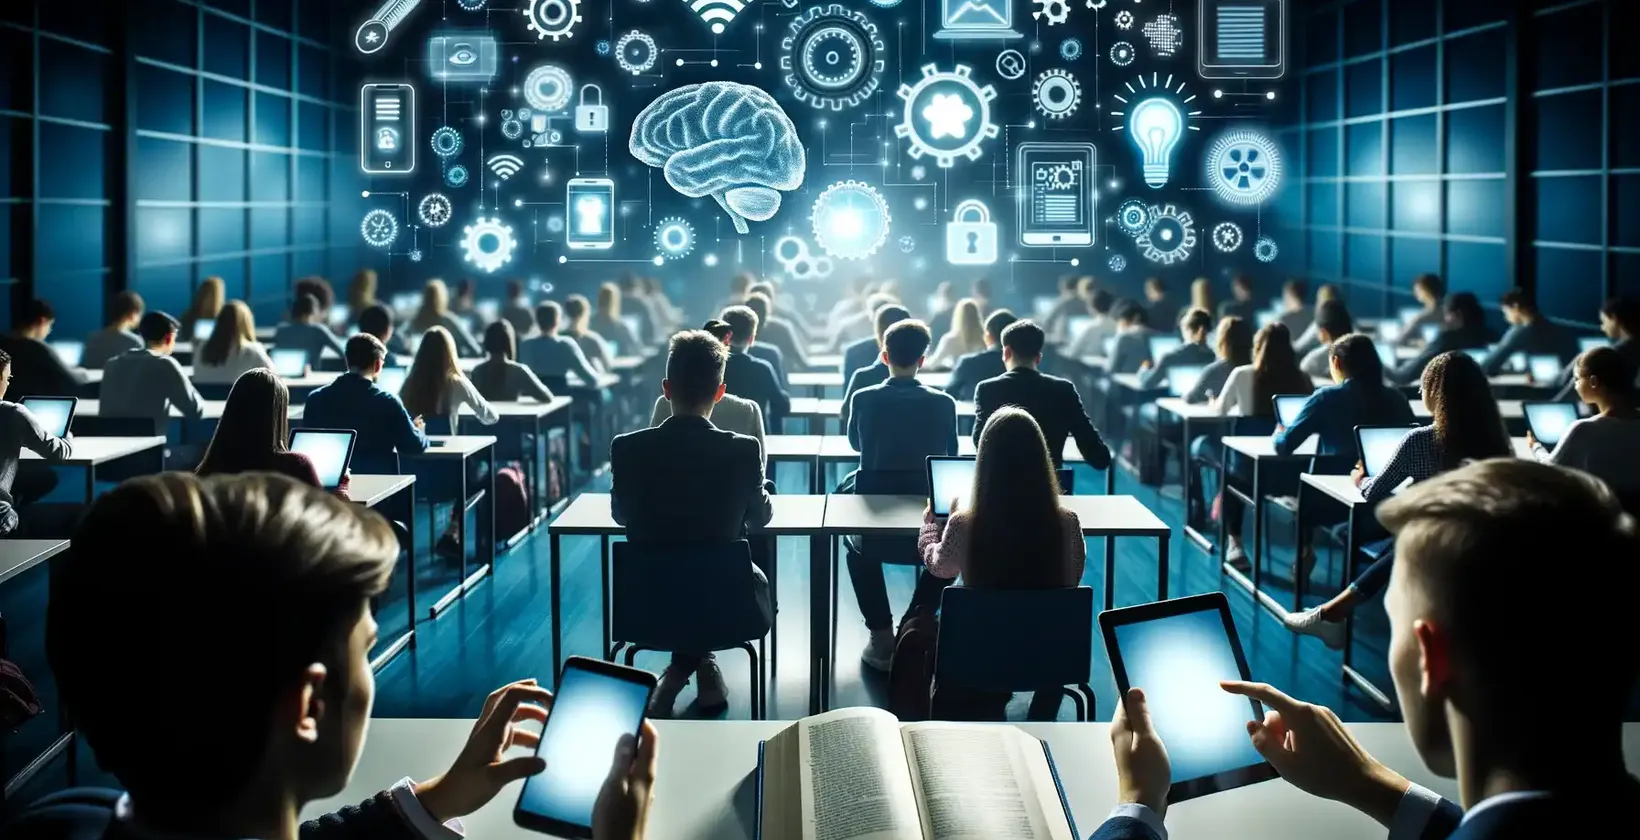 קבוצה גדולה של סטודנטים באולם הרצאות עתידני, כל אחד מצויד במחשבים ניידים וטאבלטים.